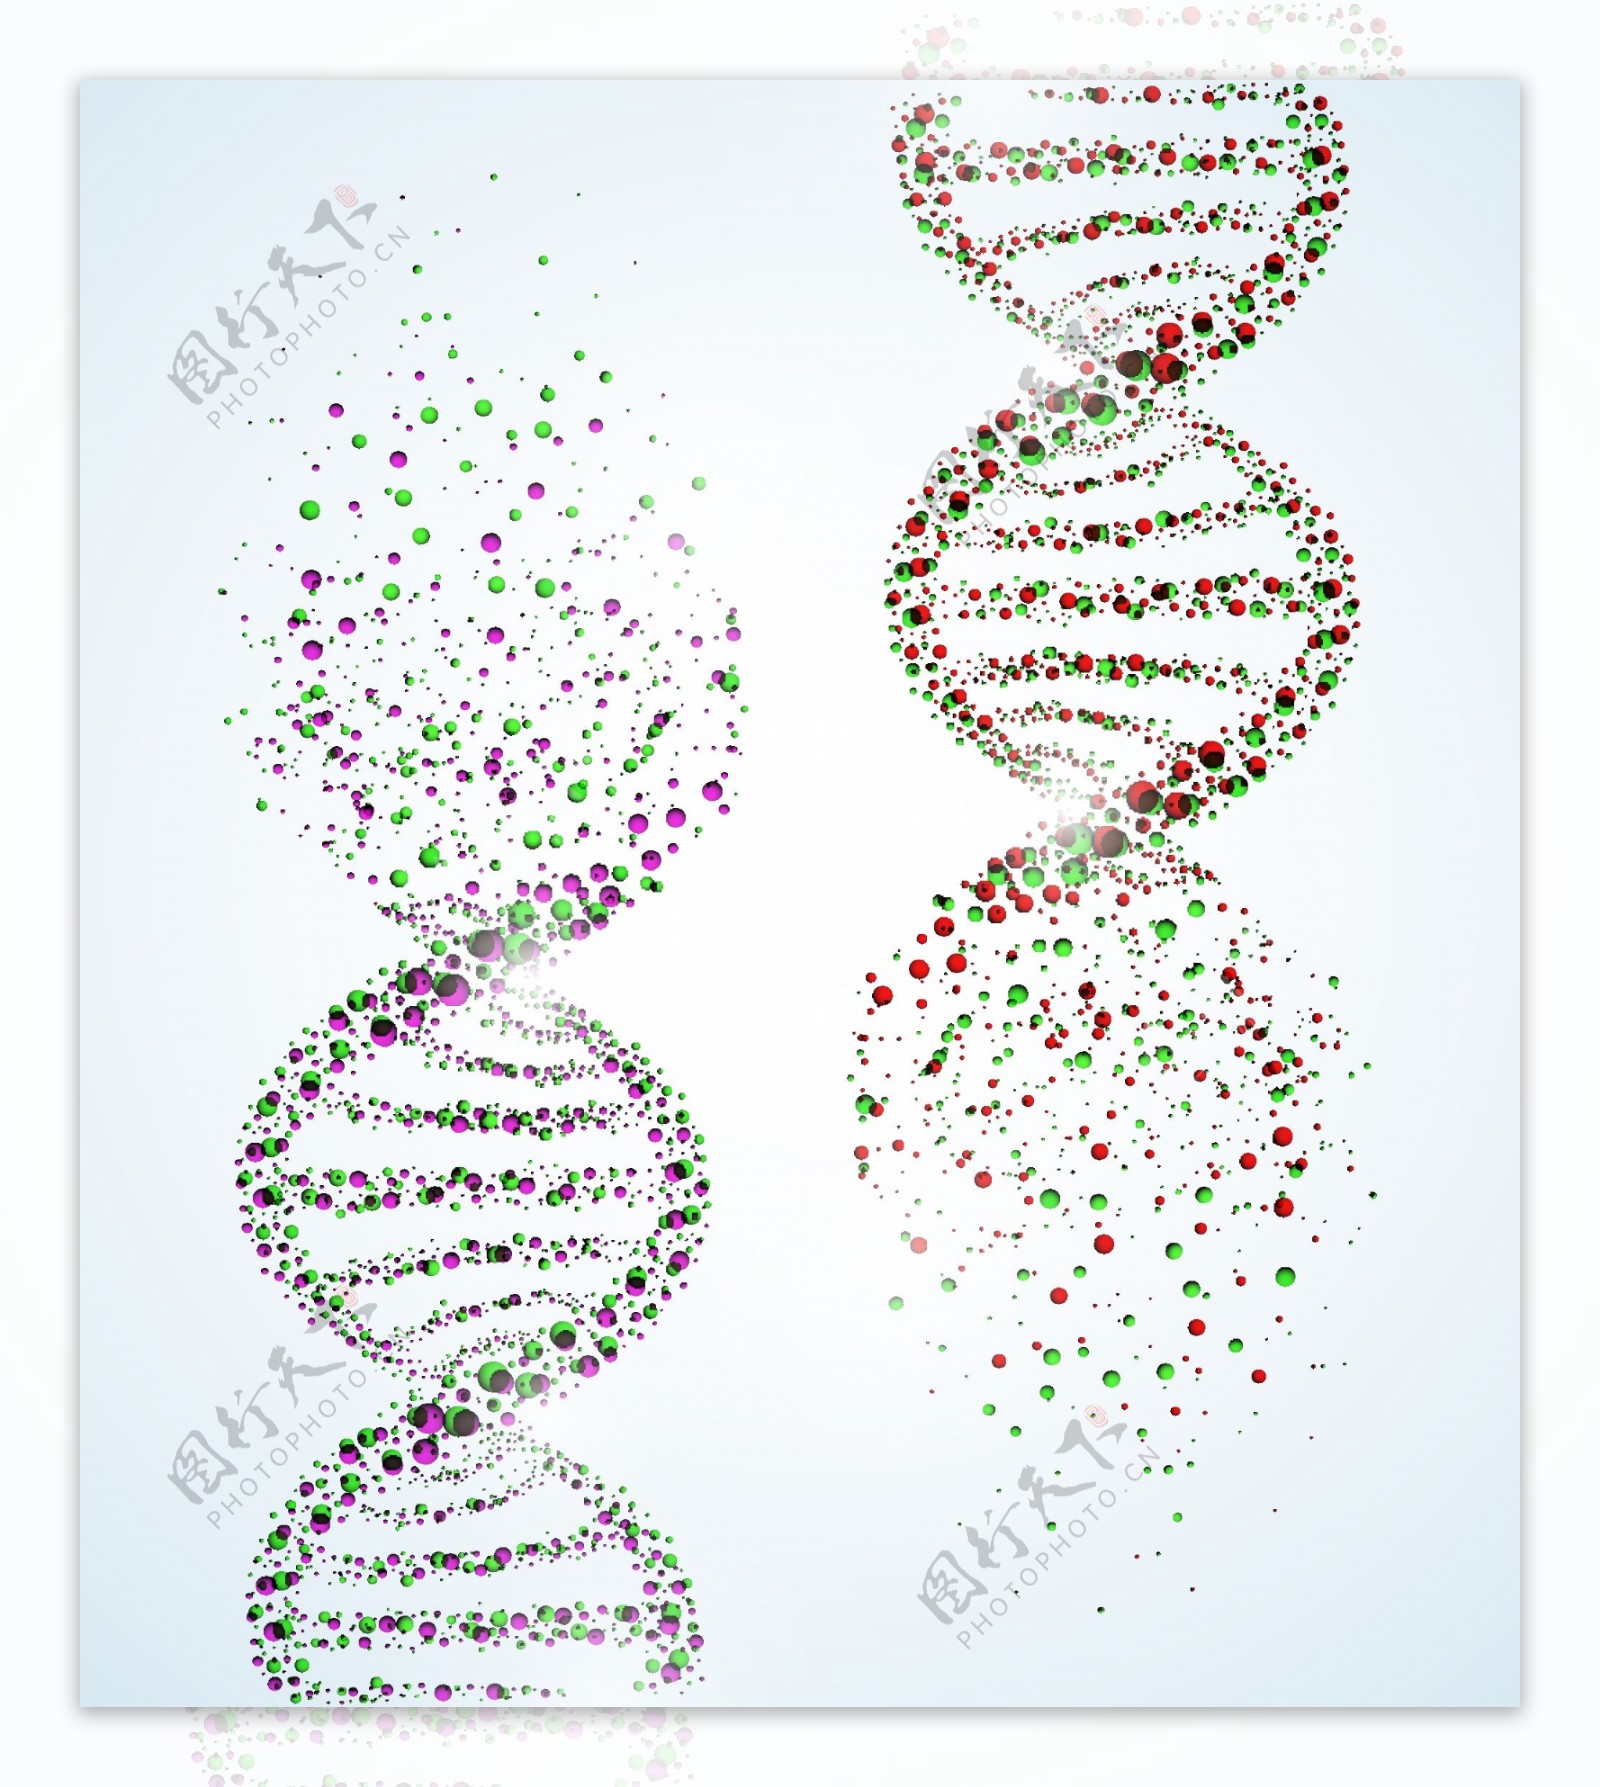 DNA遗传学遗传基因